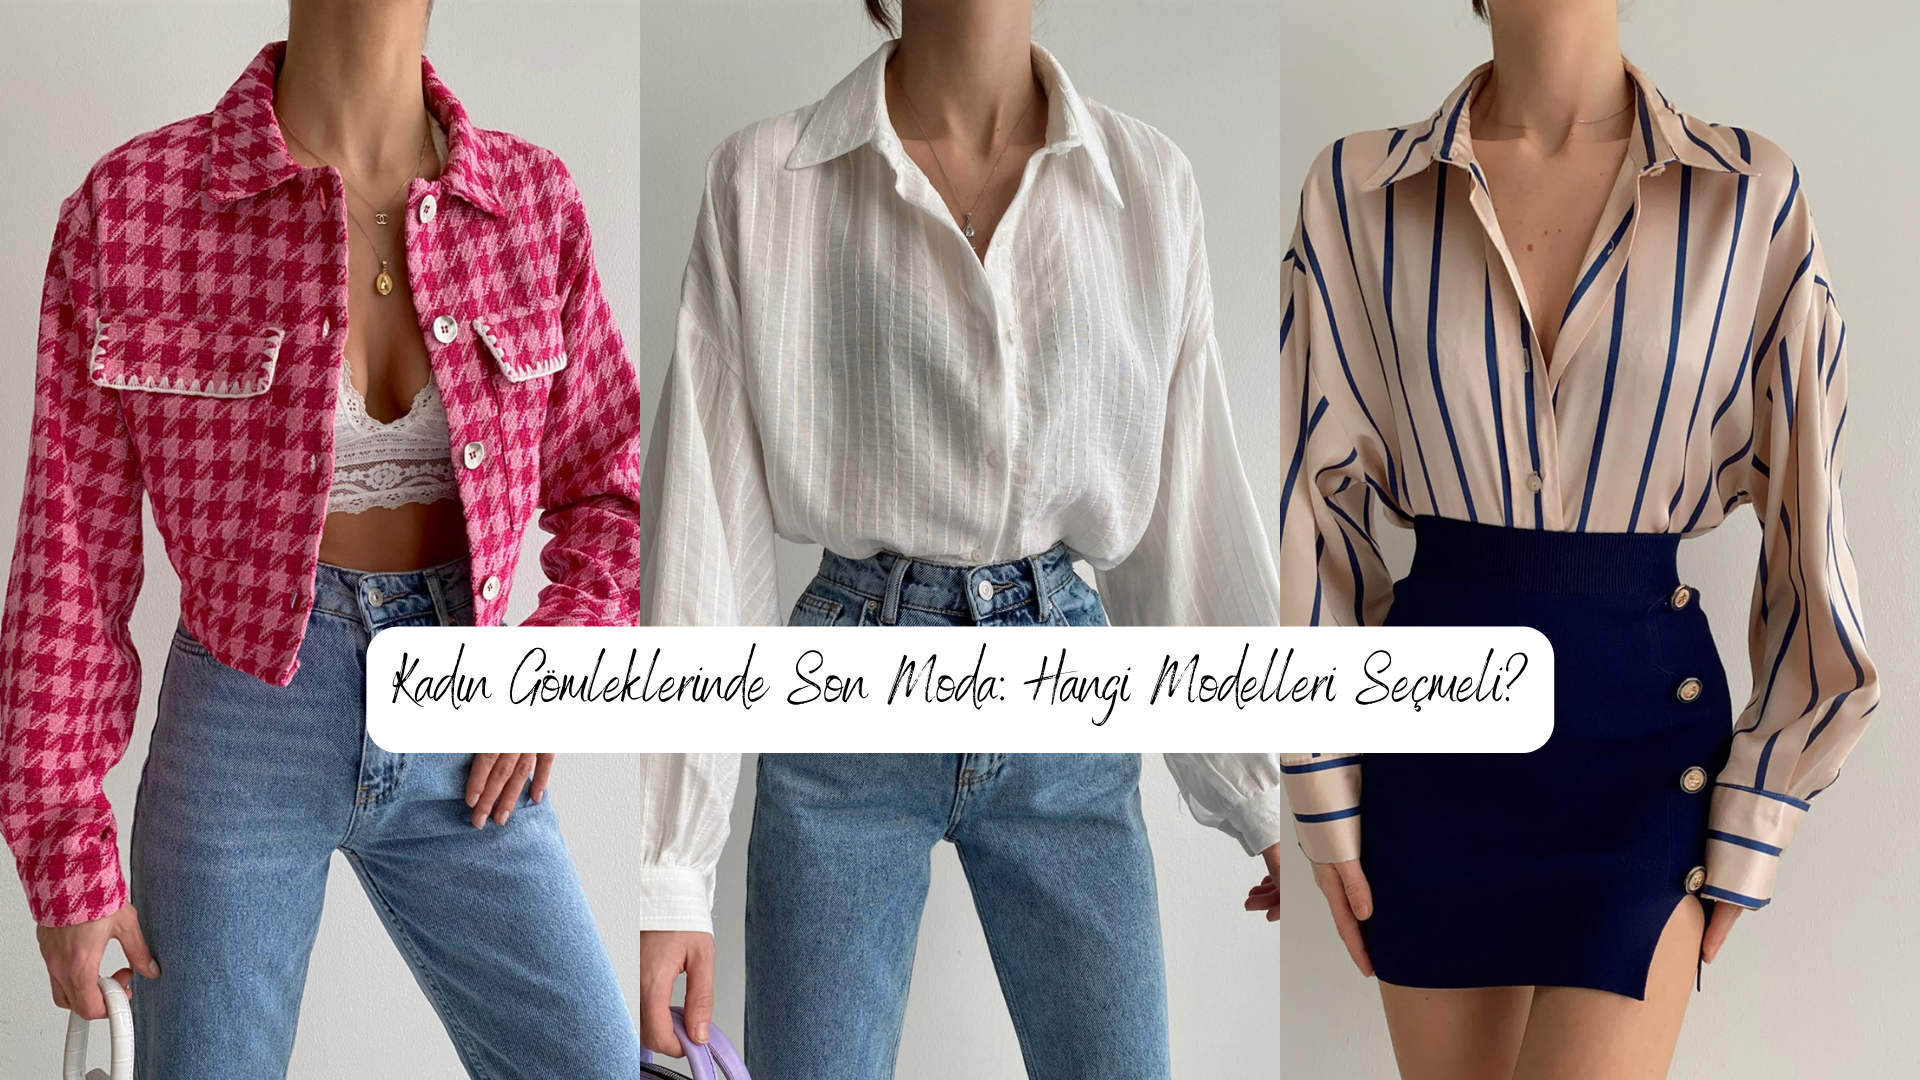 Kadın Gömleklerinde Son Moda: Hangi Modelleri Seçmeli? - Miss Rouge